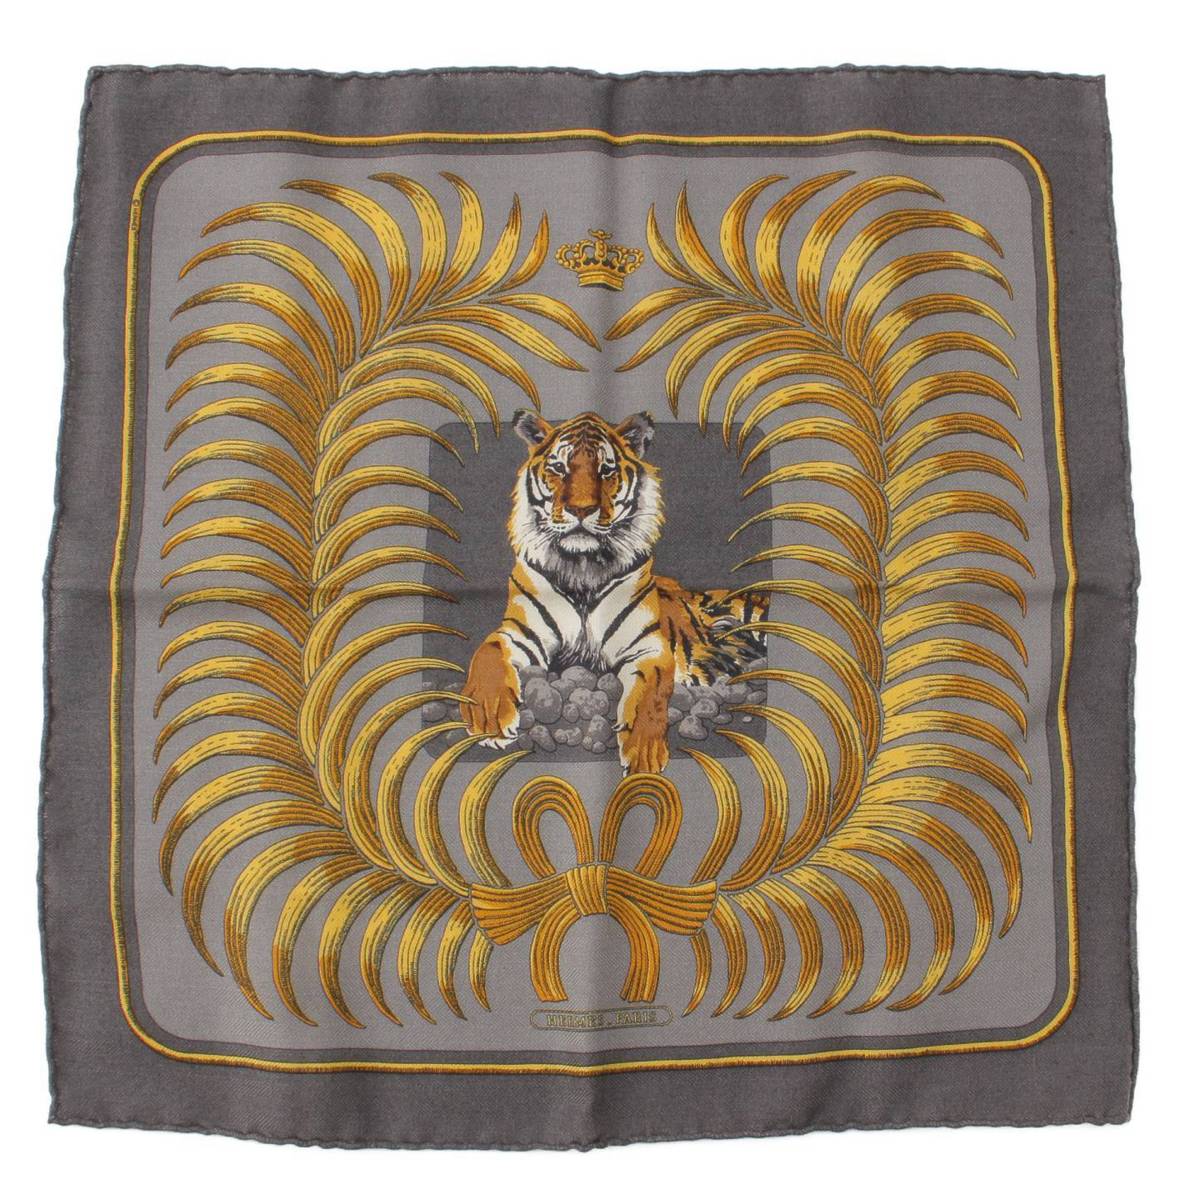 【エルメス】Hermes カレ45 TIGER ROYAL 王者の虎 カシミヤ シルク スカーフ 【中古】【鑑定済 正規品保証】197956